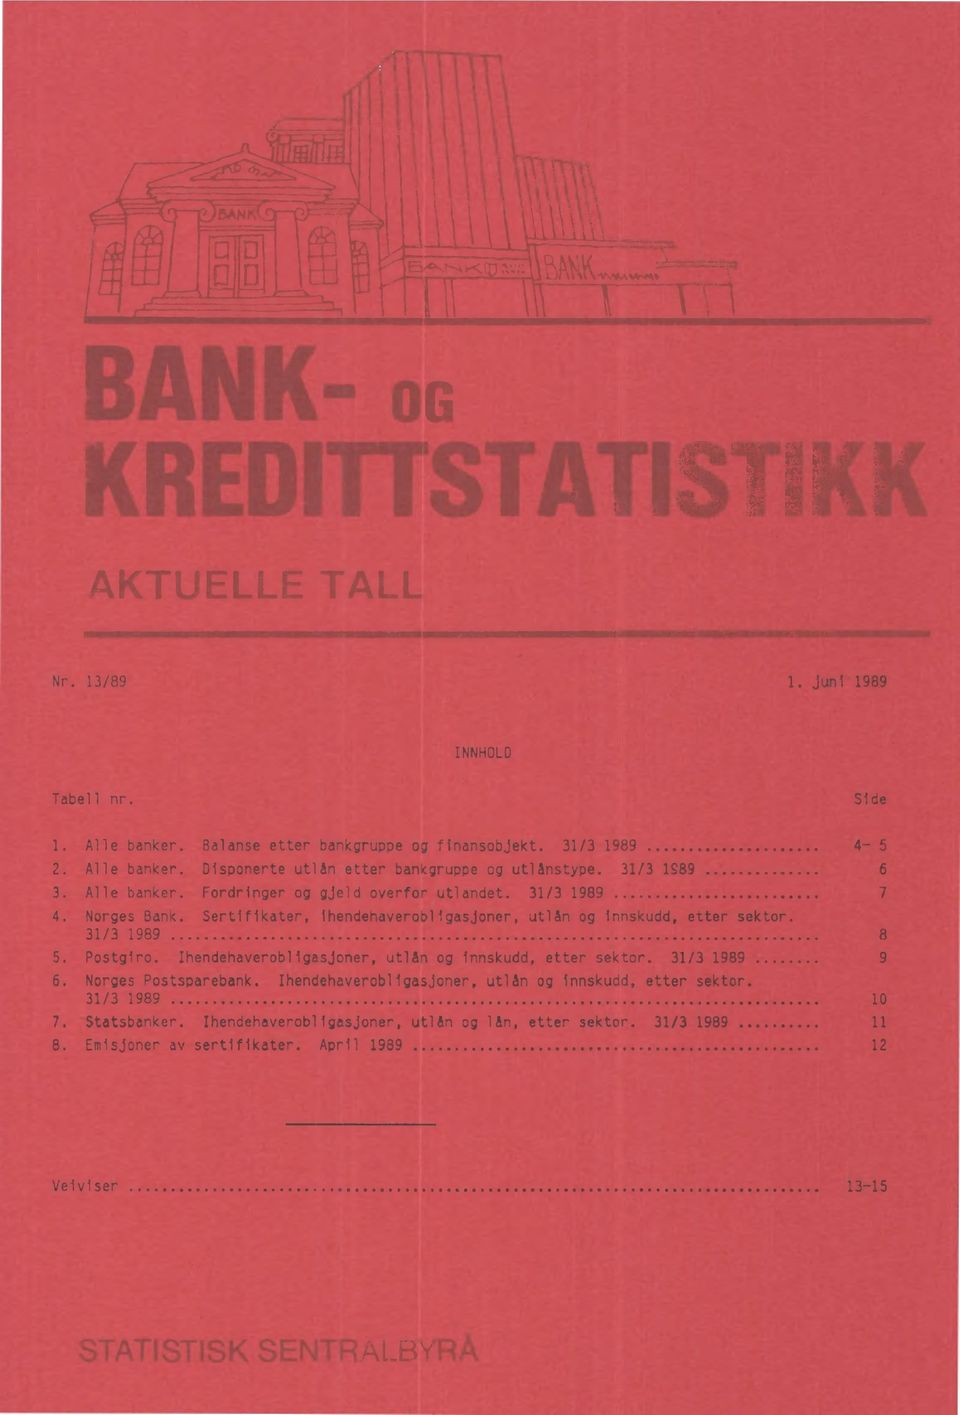 31/3 1989 8 5. Postgiro. Ihendehaverobligasjoner, utlån og innskudd, etter sektor. 31/3 1989 9 6. Norges Postsparebank.